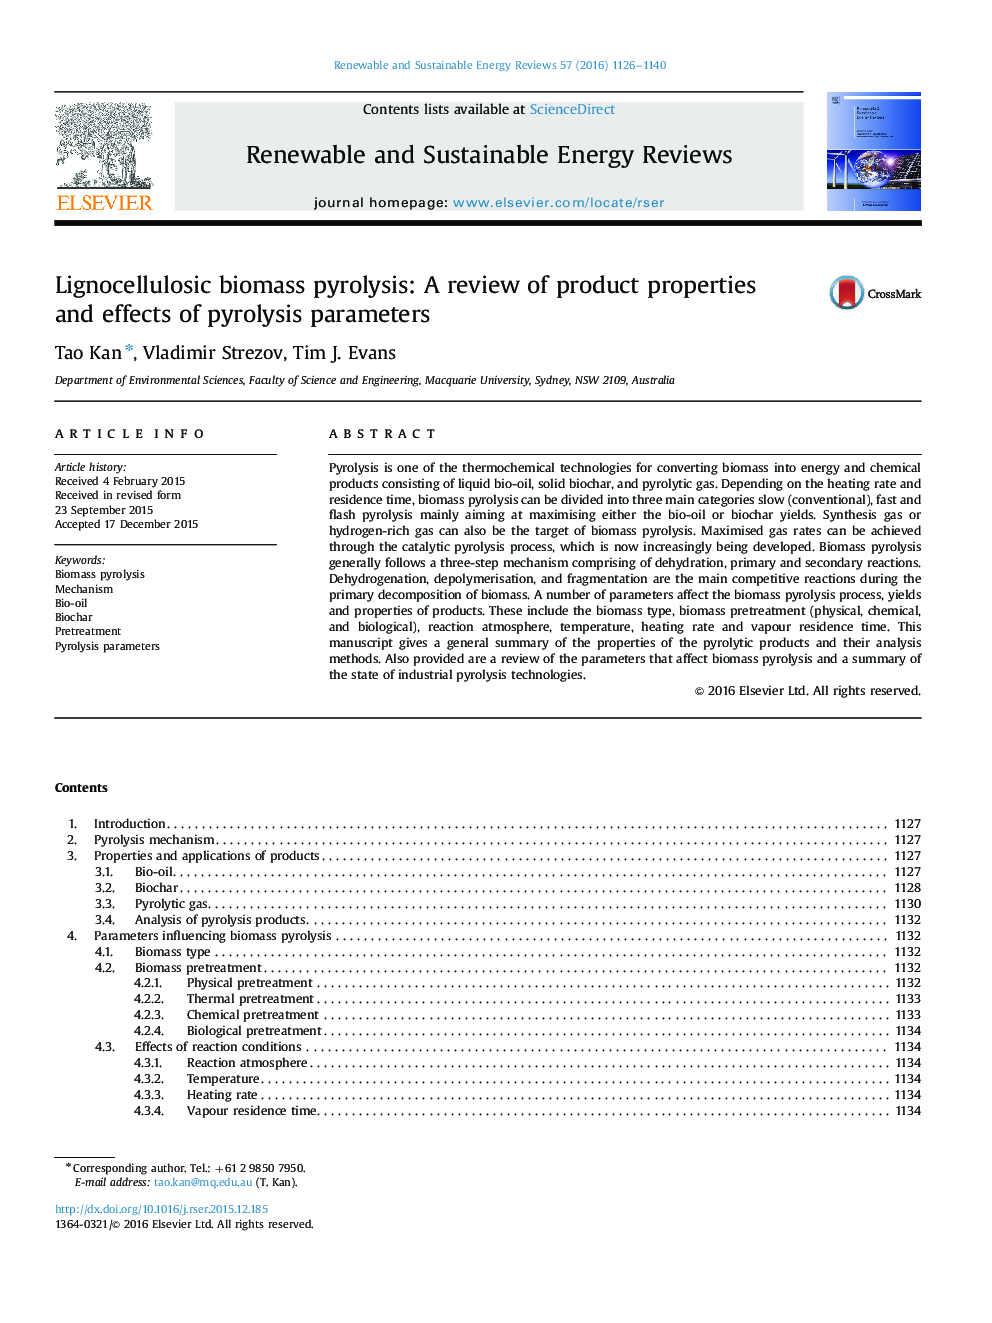 پیرولیز زیست توده لیگنوسلولزیک: بررسی خواص محصول و اثرات پارامترهای پیررولیز 